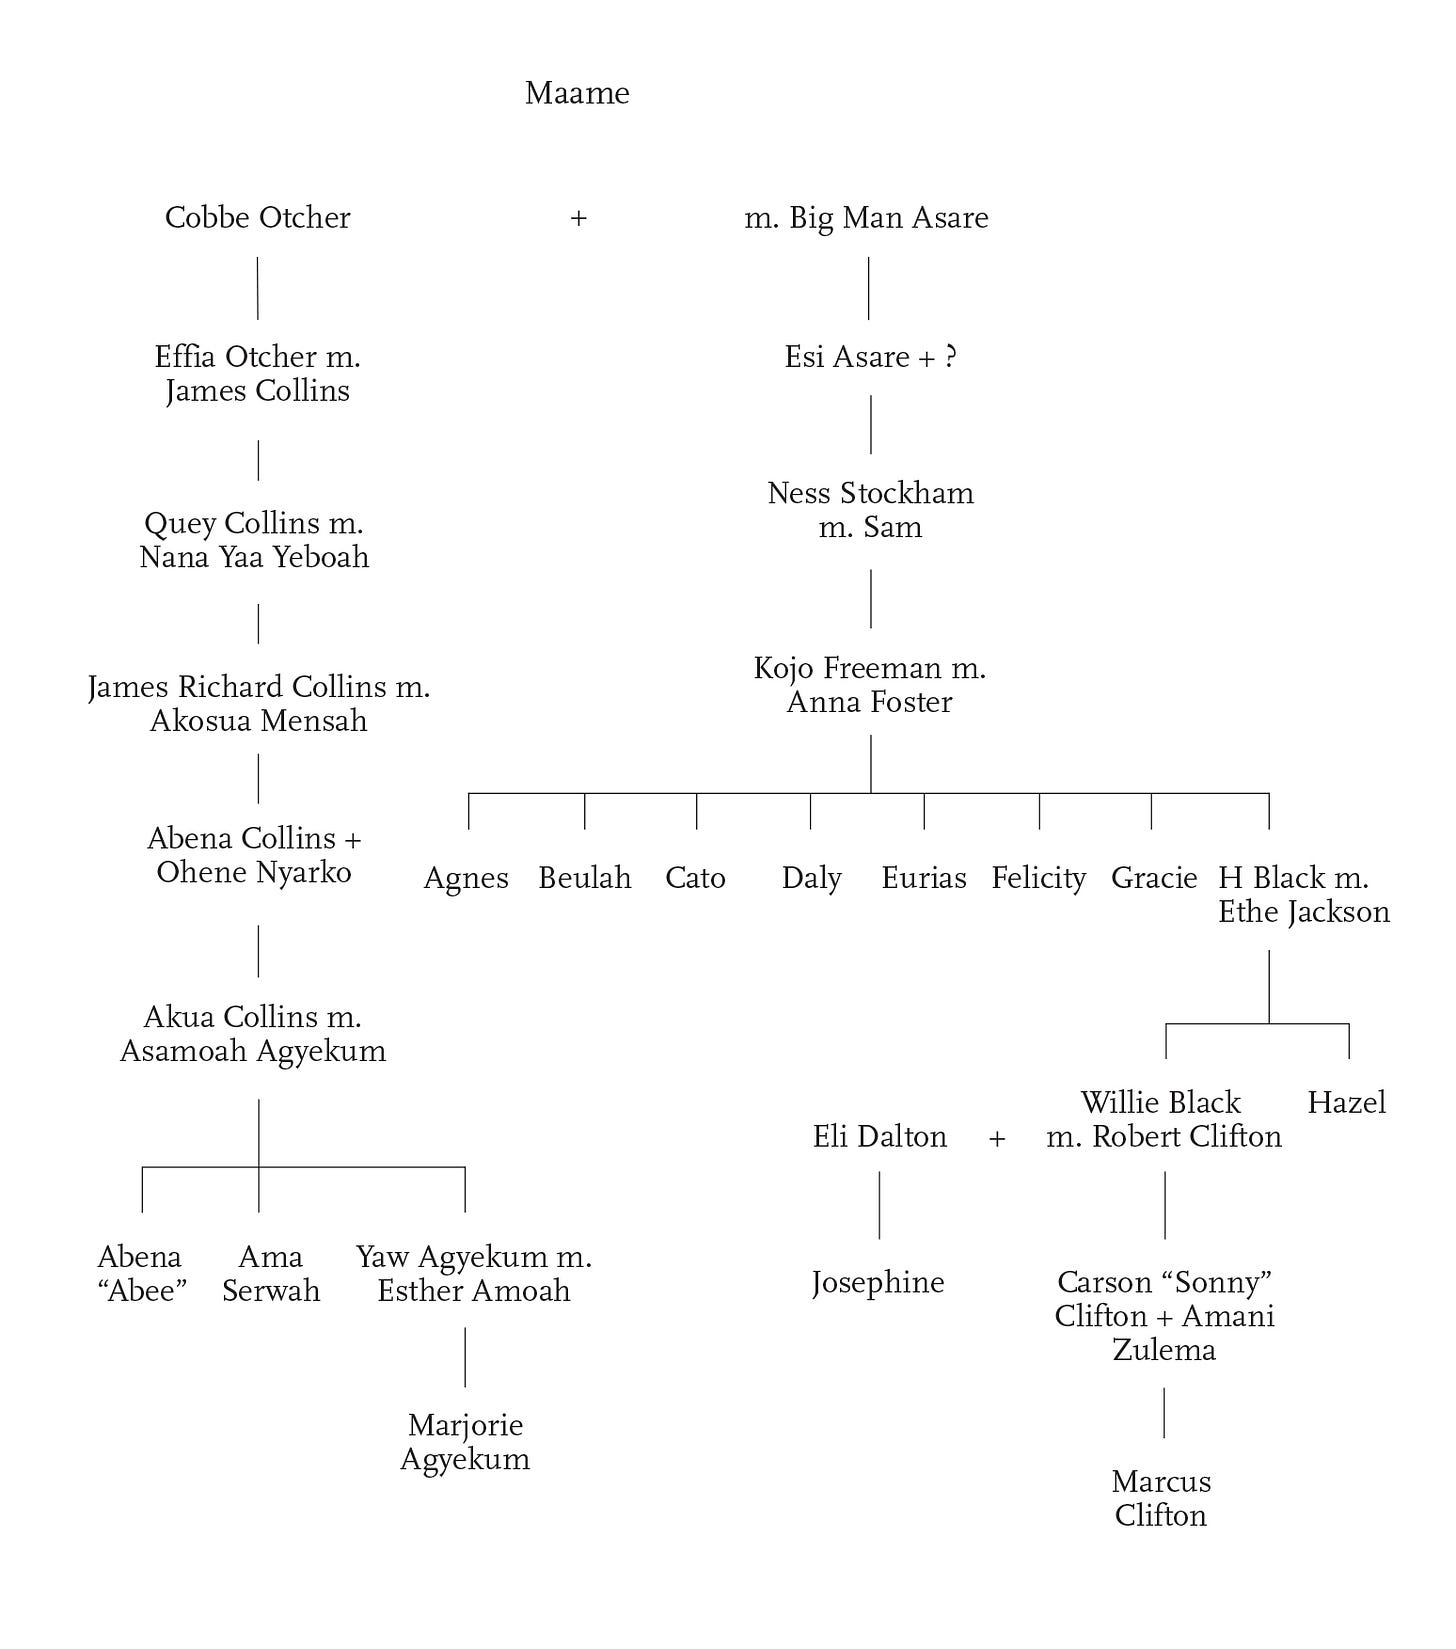 Family Tree | Knopf Doubleday